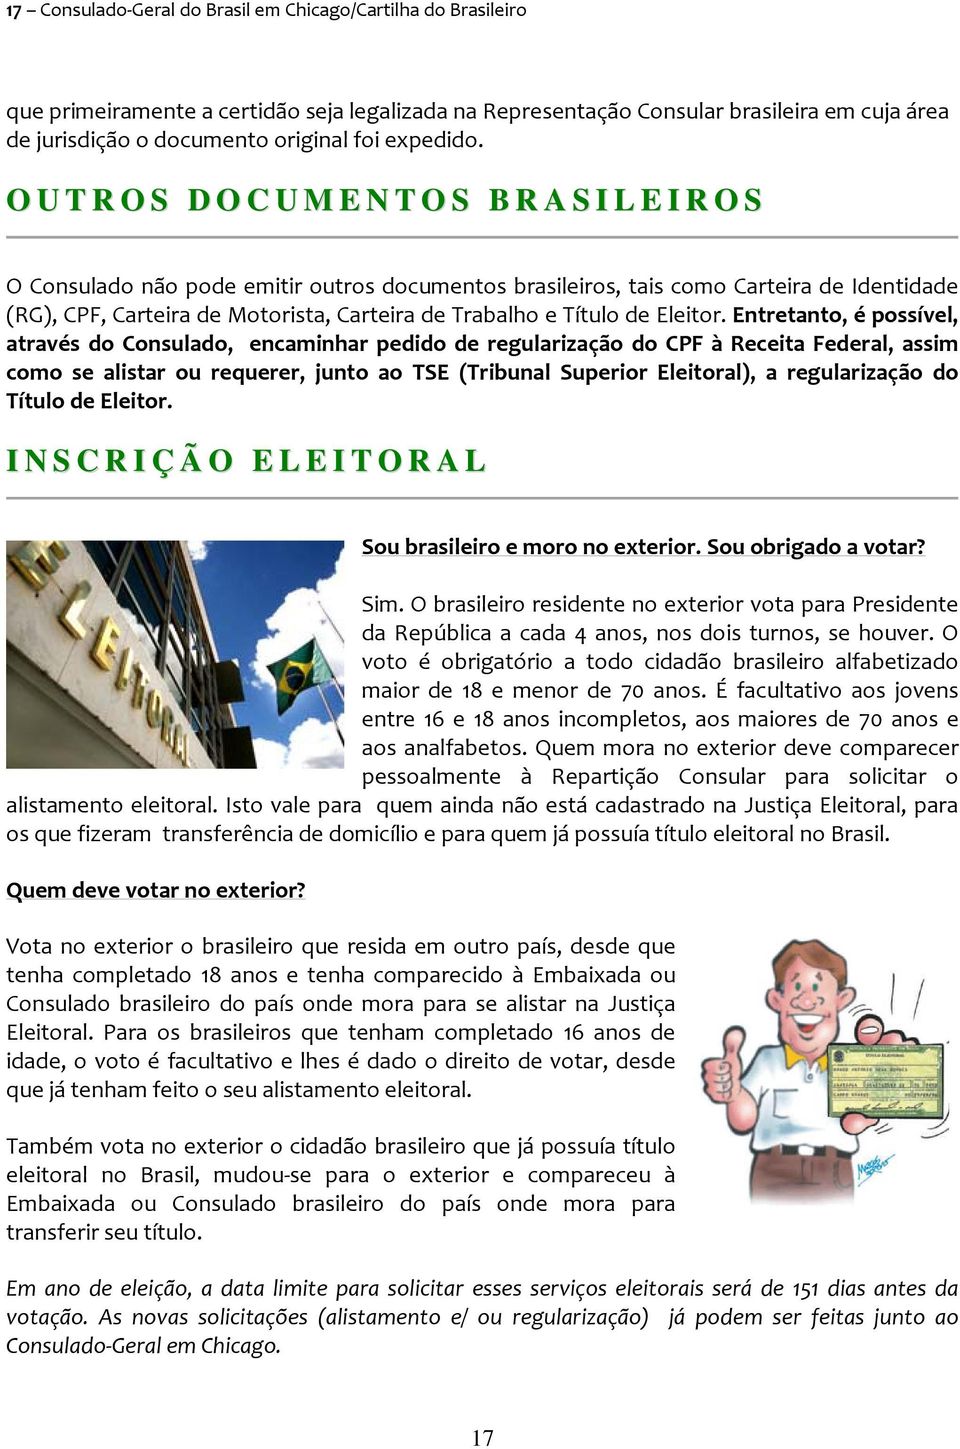 O U T R O S D O C U M E N T O S B R A S I L E I R O S O Consulado não pode emitir outros documentos brasileiros, tais como Carteira de Identidade (RG), CPF, Carteira de Motorista, Carteira de